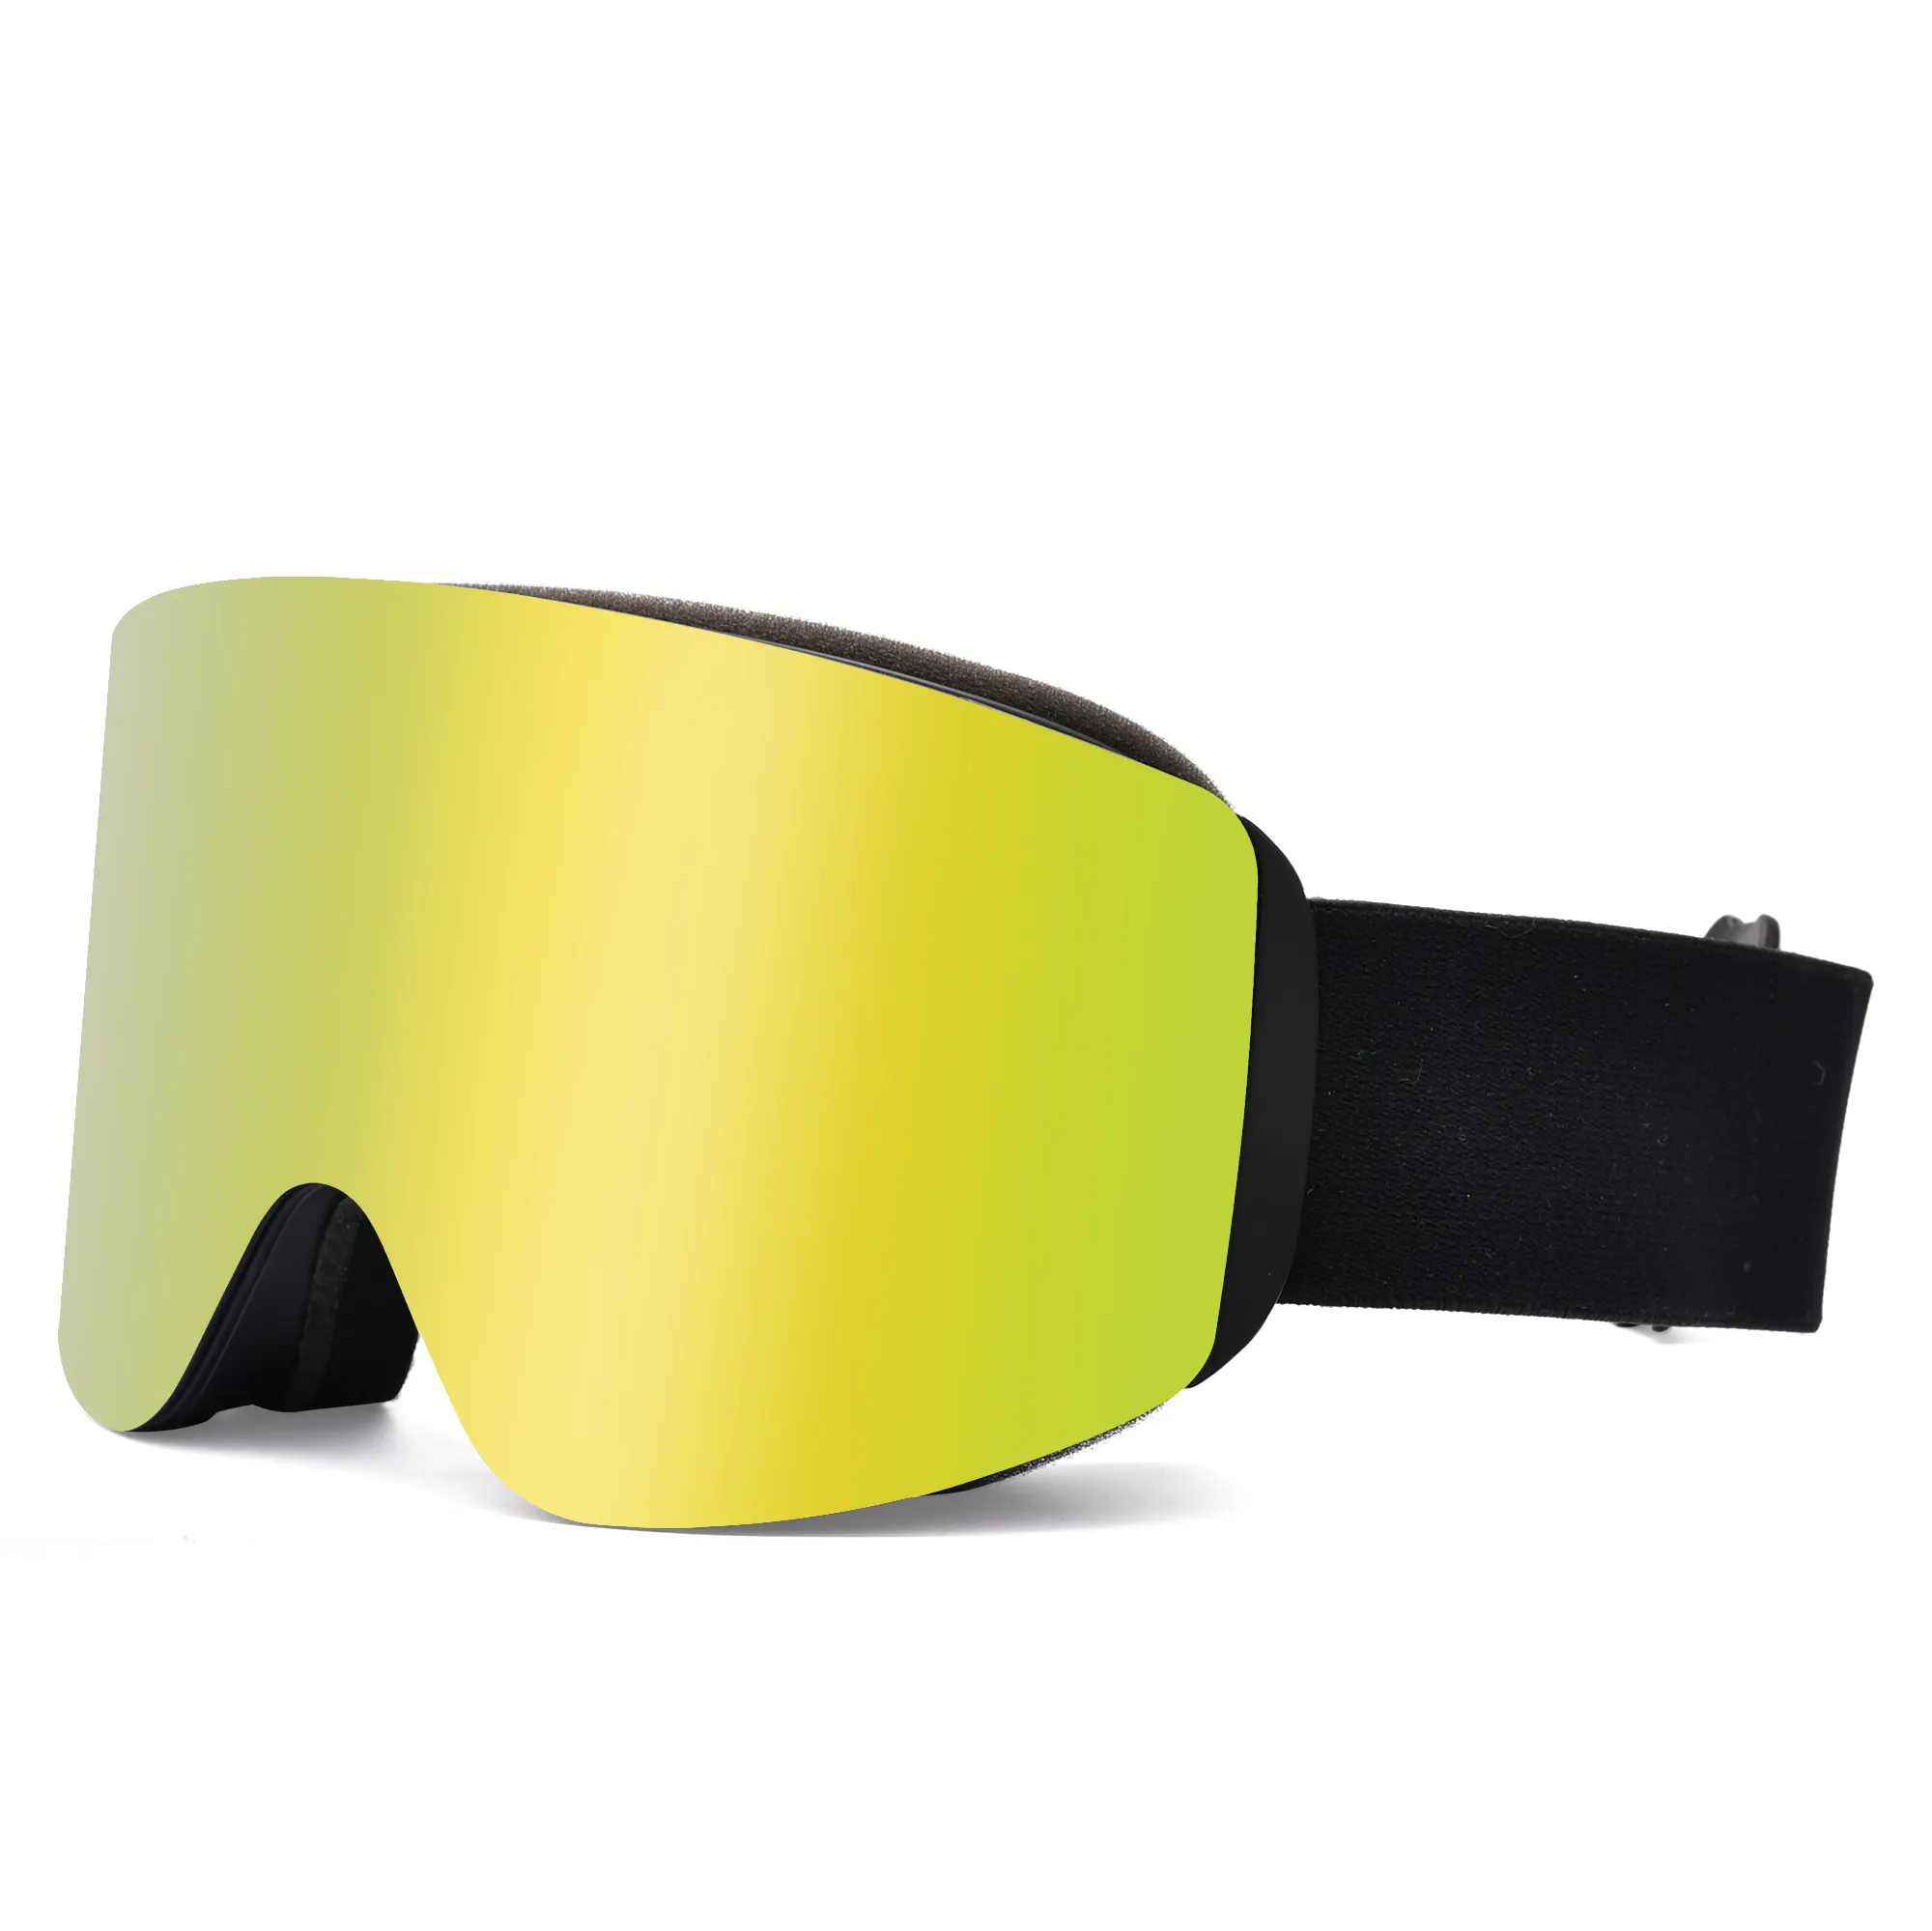 Vente en gros de lunettes de protection des yeux pour hommes, lunettes de neige magnétiques, lunettes de ski pour femmes